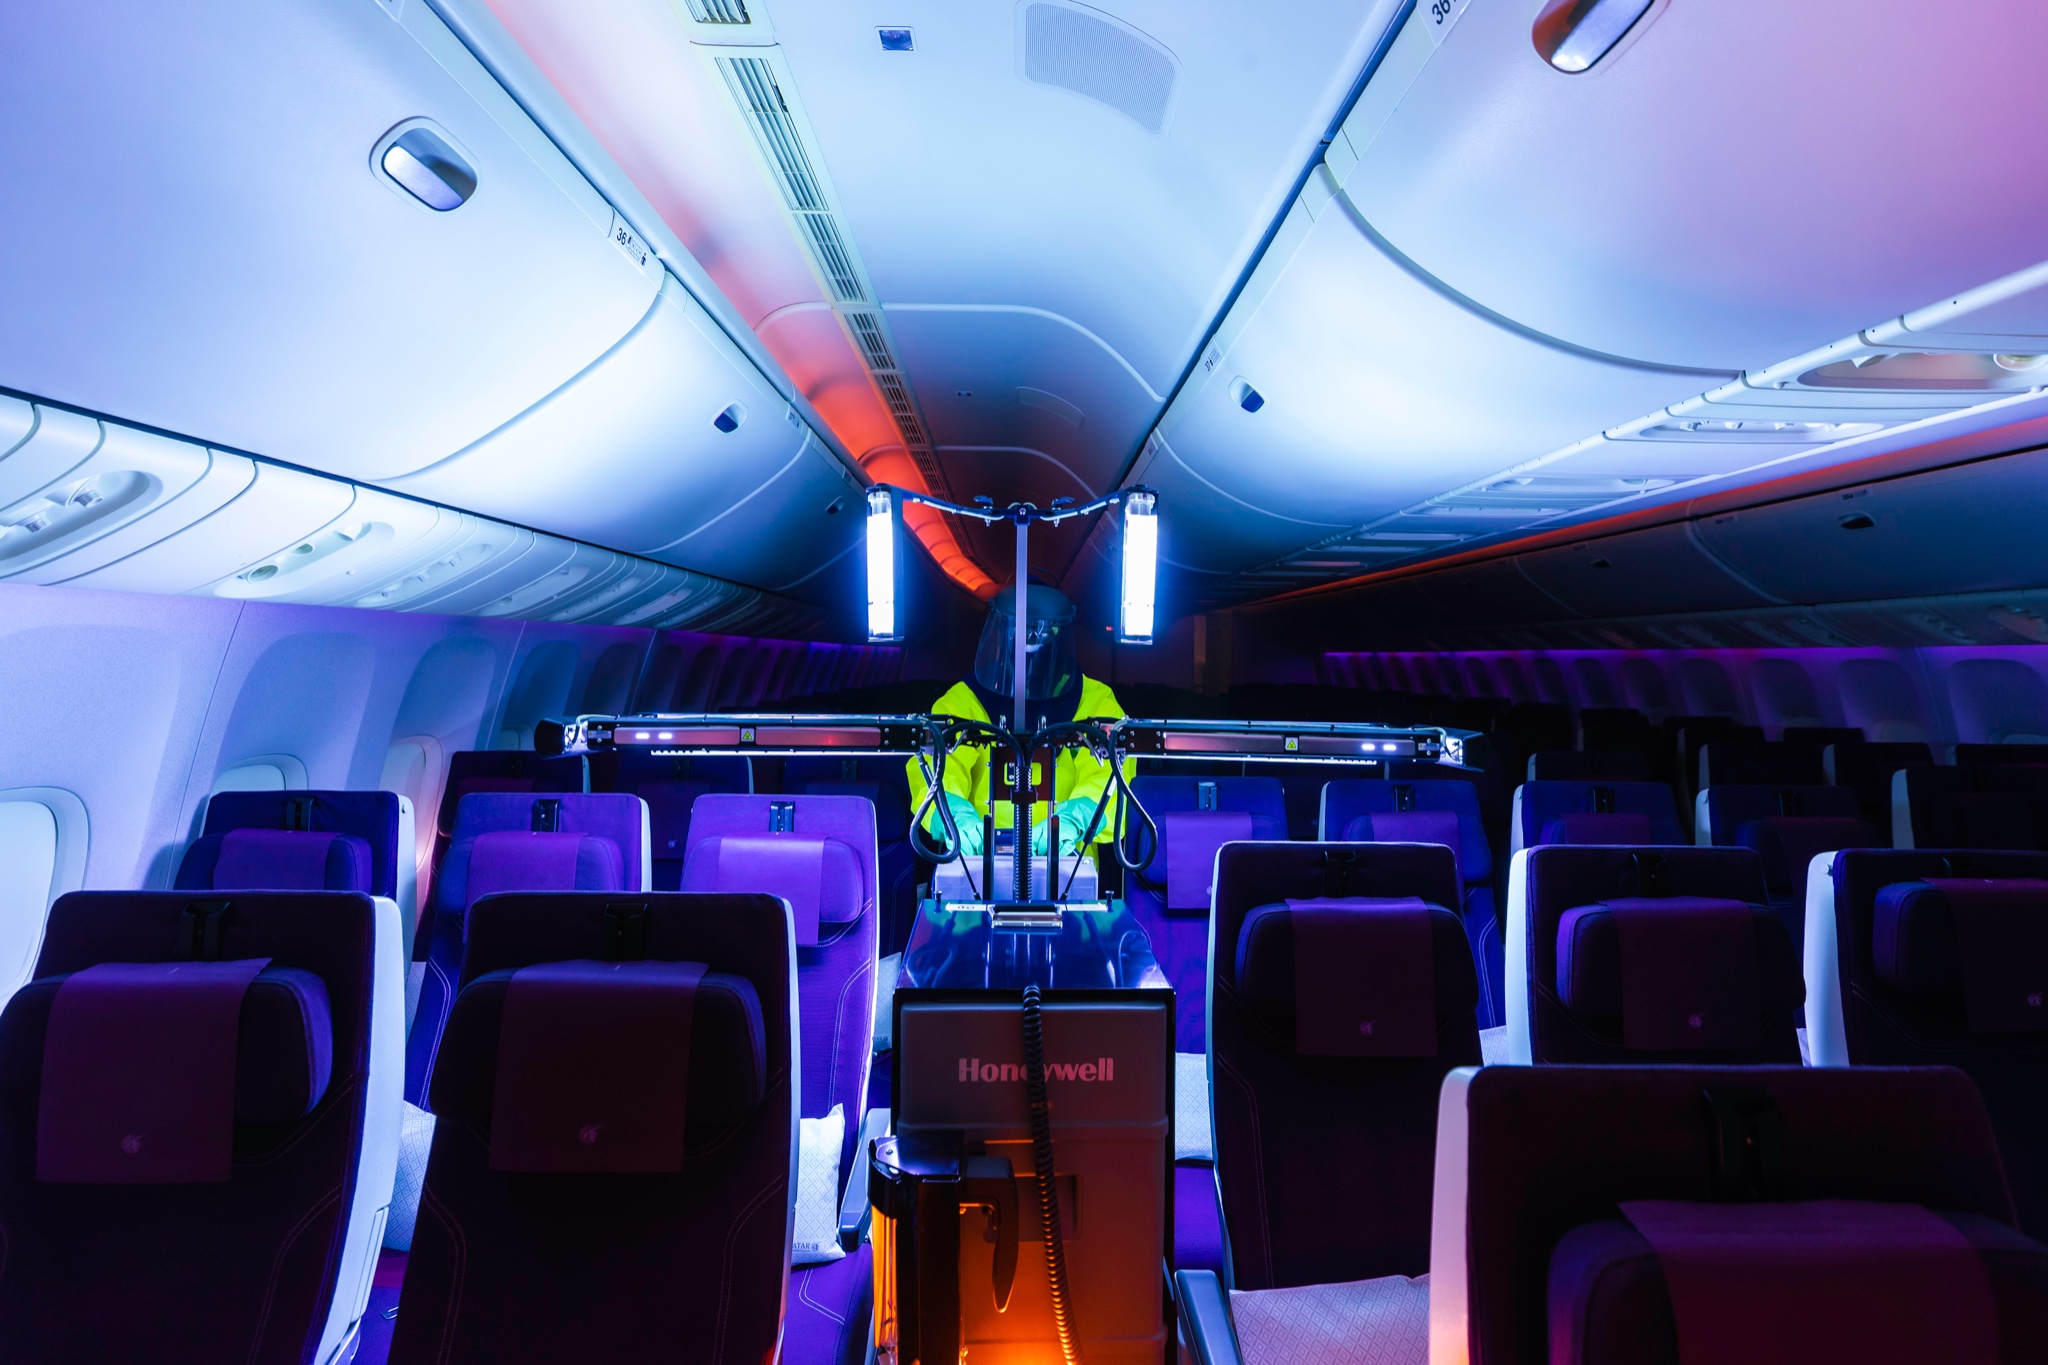 Qatar Aiways using a UV machine © Qatar Airways